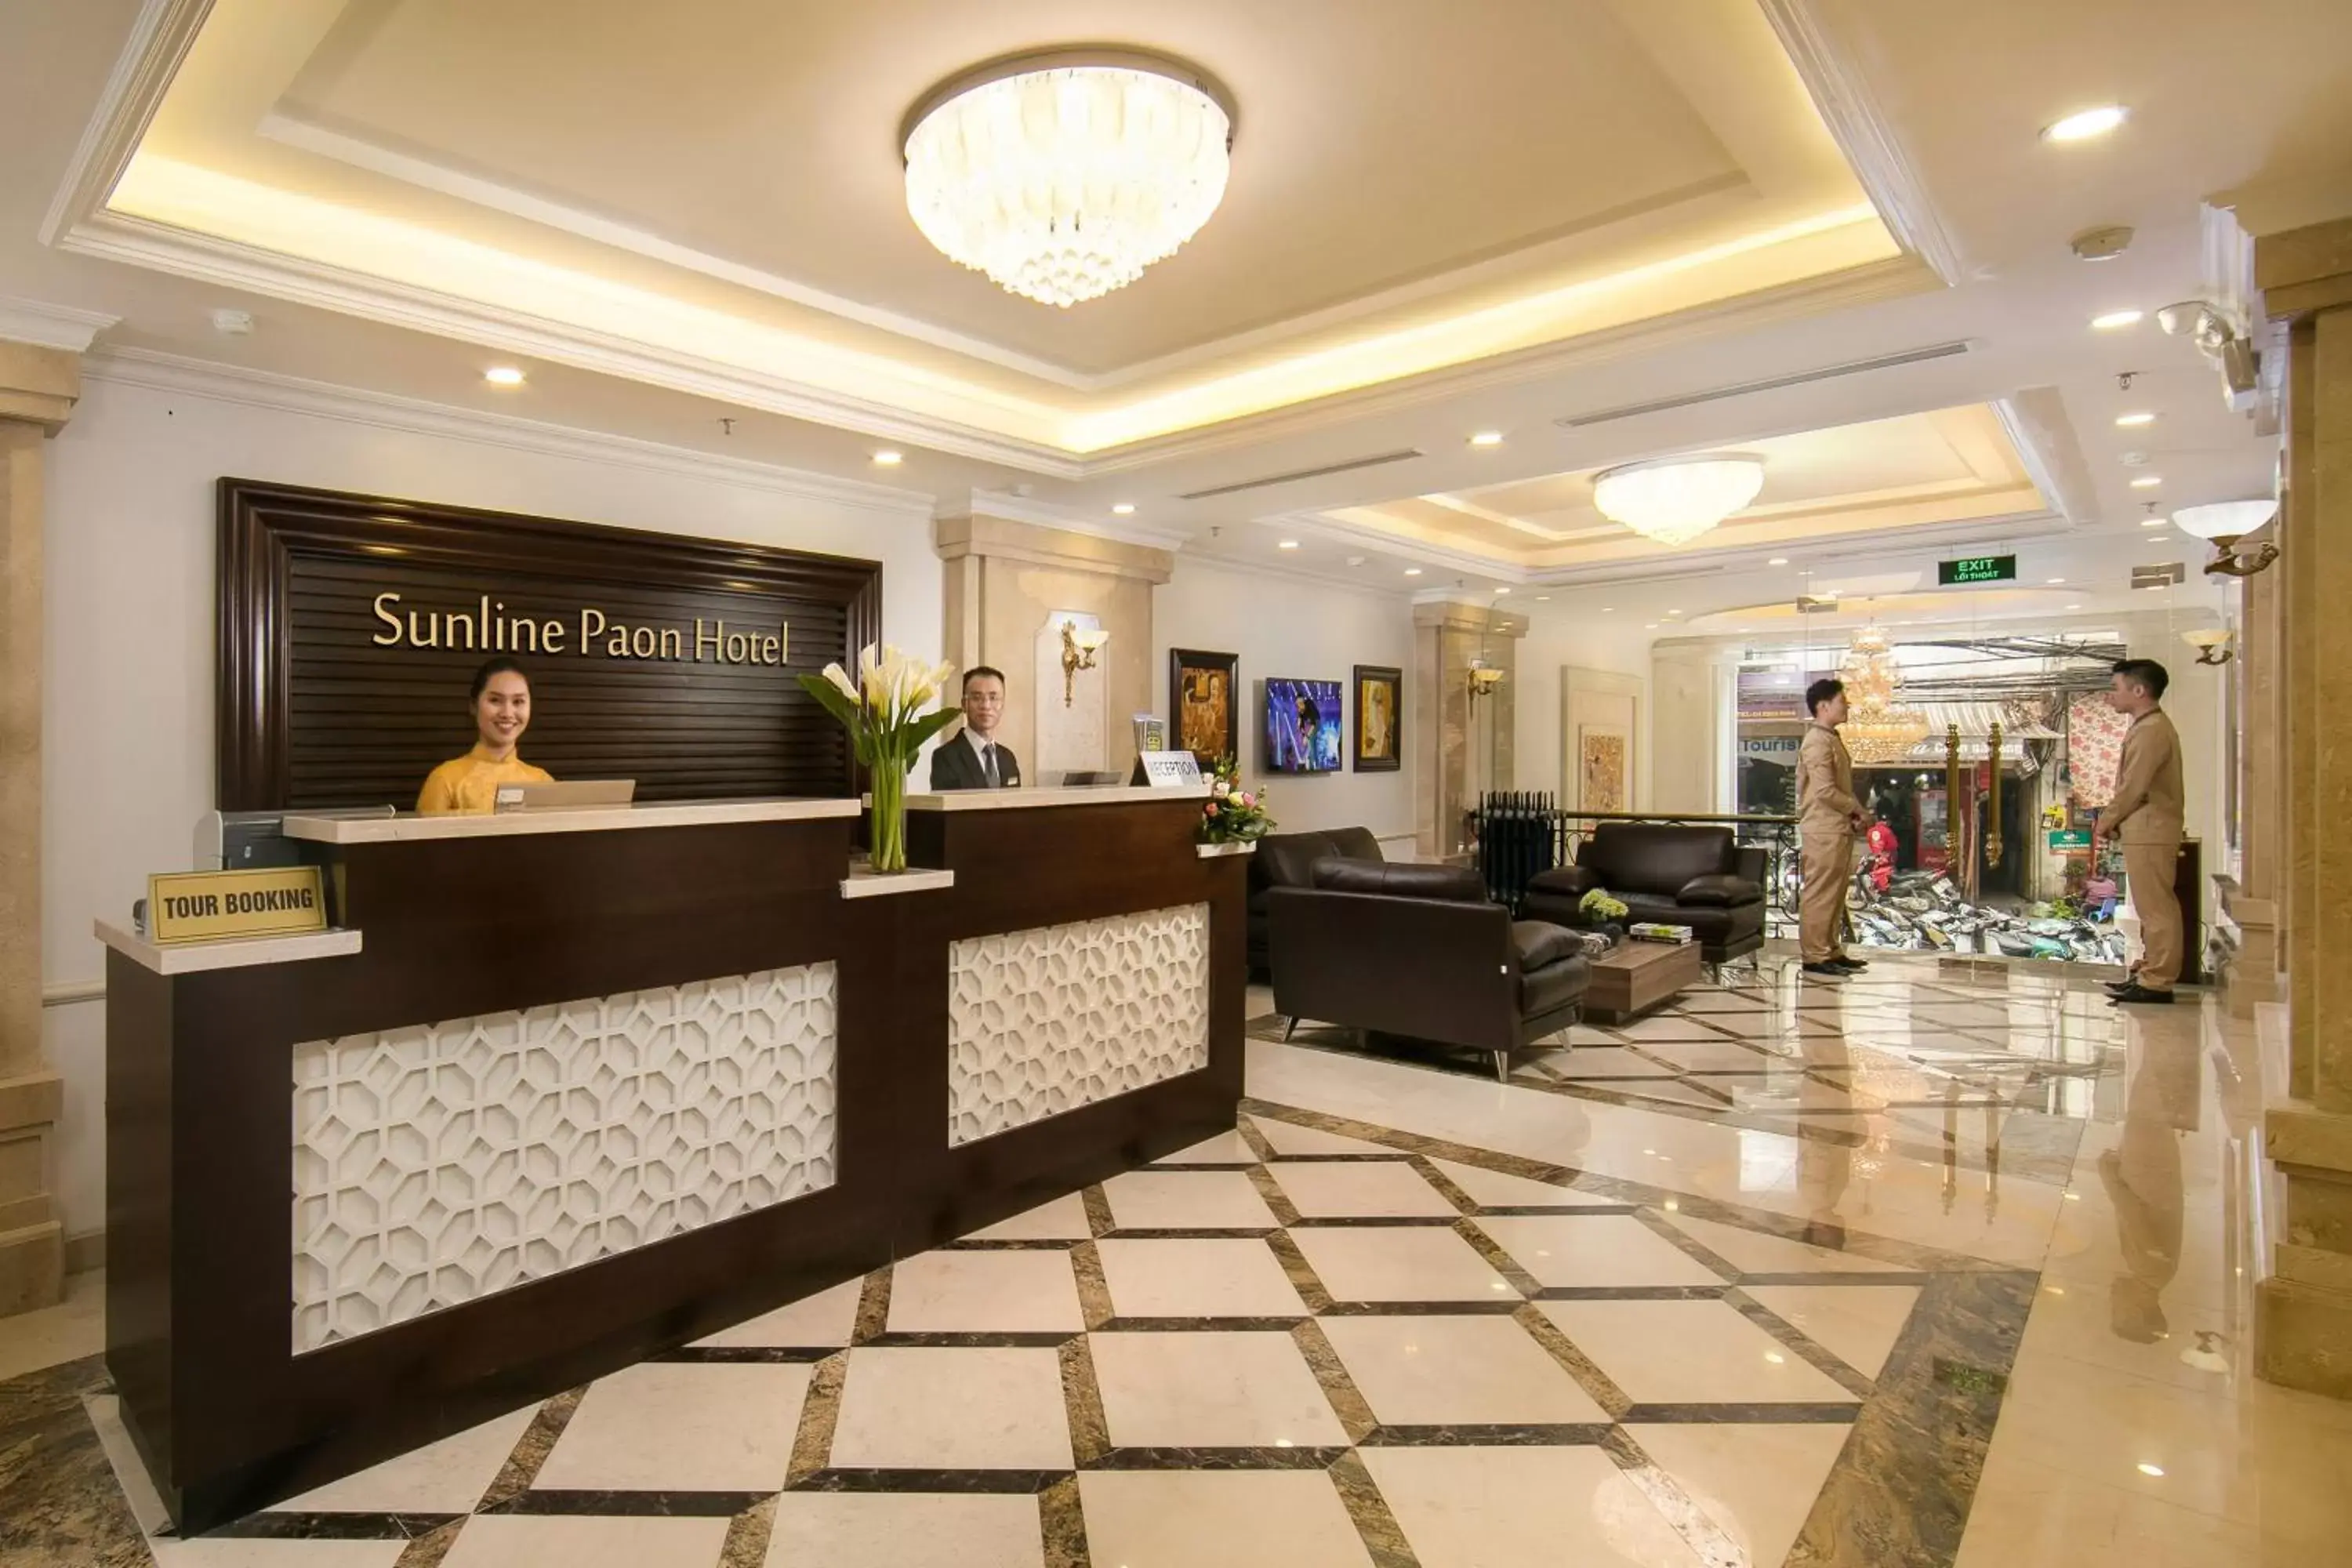 Lobby or reception, Lobby/Reception in Hanoi Paon Hotel & Spa